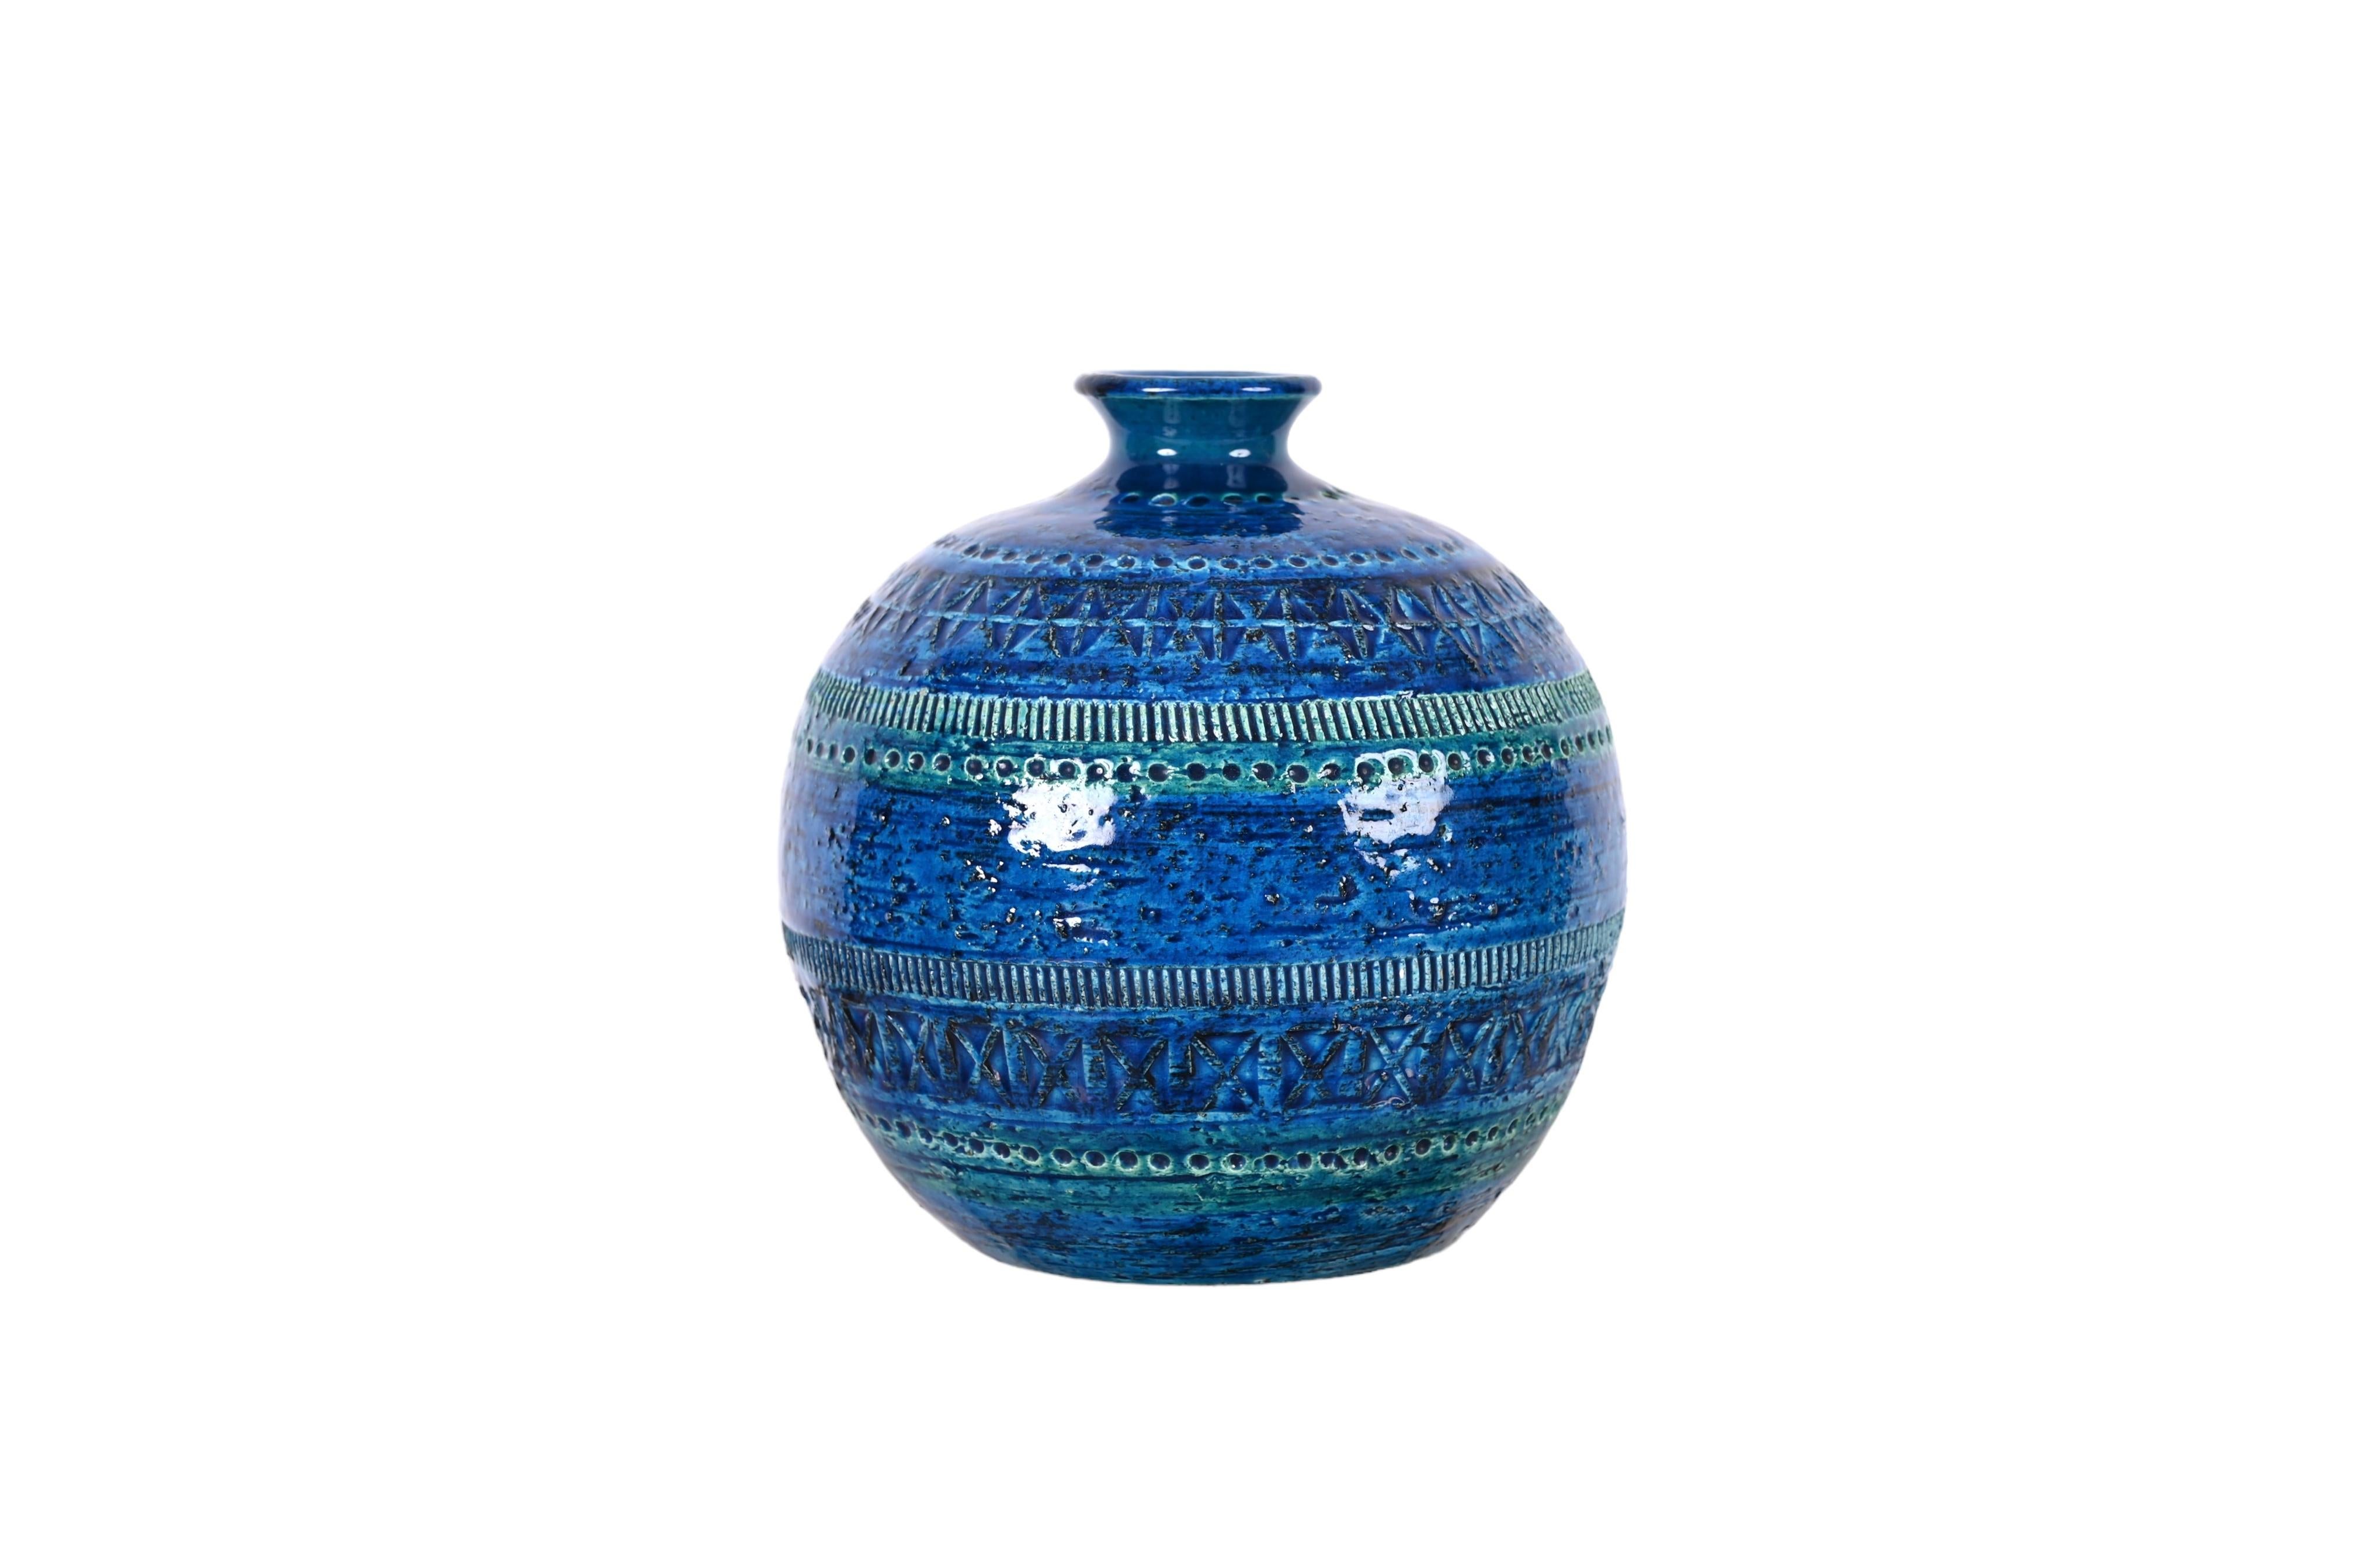 Aldo Londi Terracotta Ceramic Rimini Blue Vase for Bitossi, Italy, 1960s For Sale 3